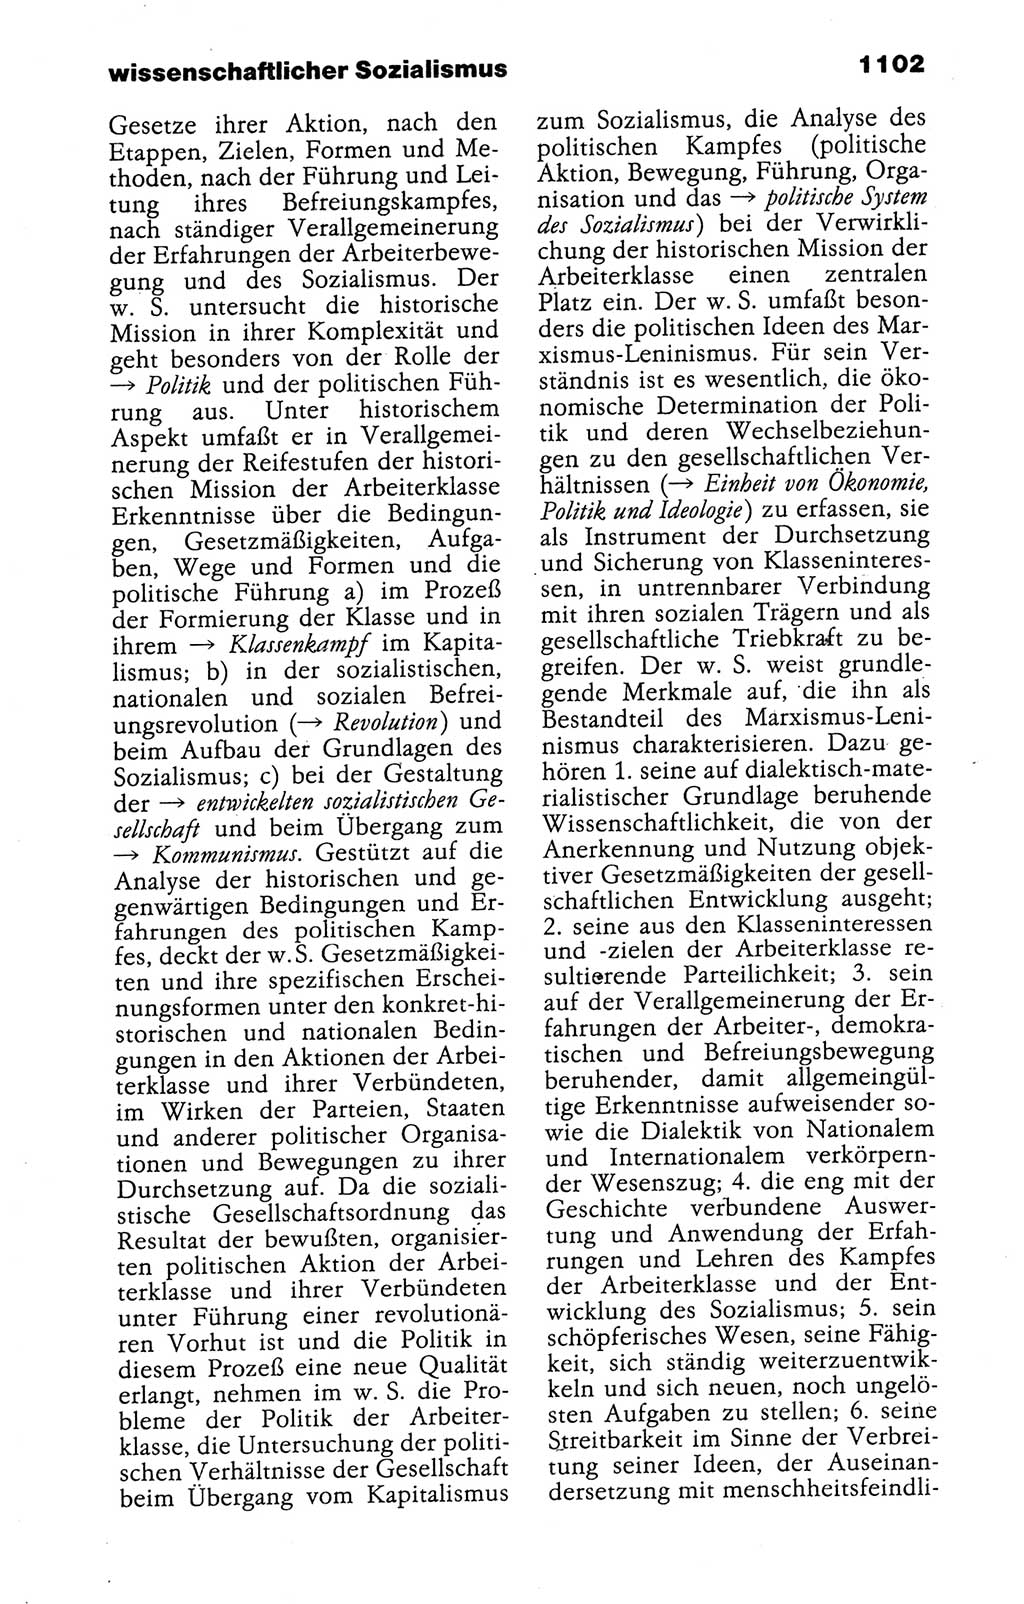 Kleines politisches Wörterbuch [Deutsche Demokratische Republik (DDR)] 1988, Seite 1102 (Kl. pol. Wb. DDR 1988, S. 1102)